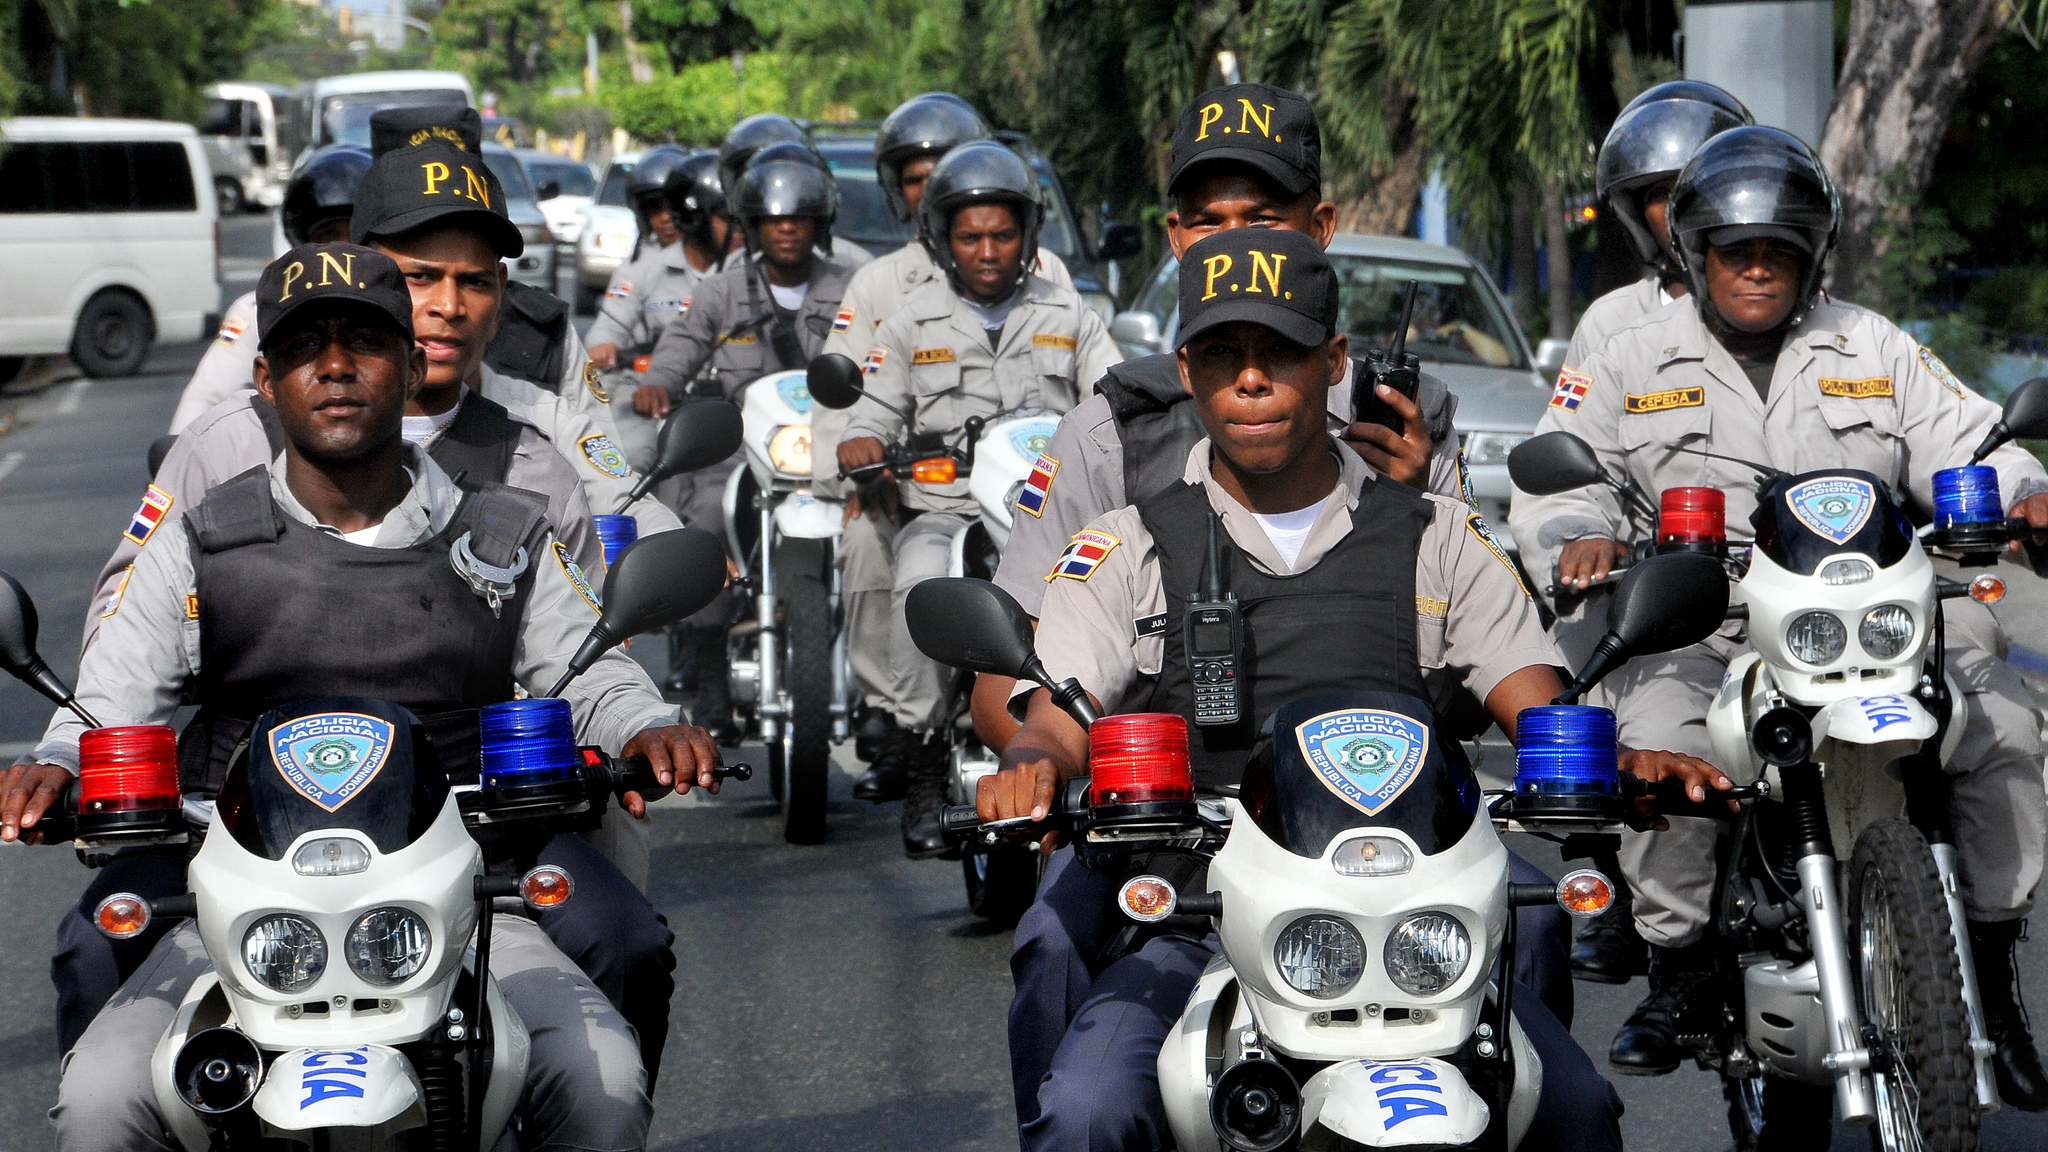 REPÚBLICA DOMINICANA: Policía Nacional conmemora 83 aniversario y renueva compromiso con seguridad ciudadana y convivencia pacífica